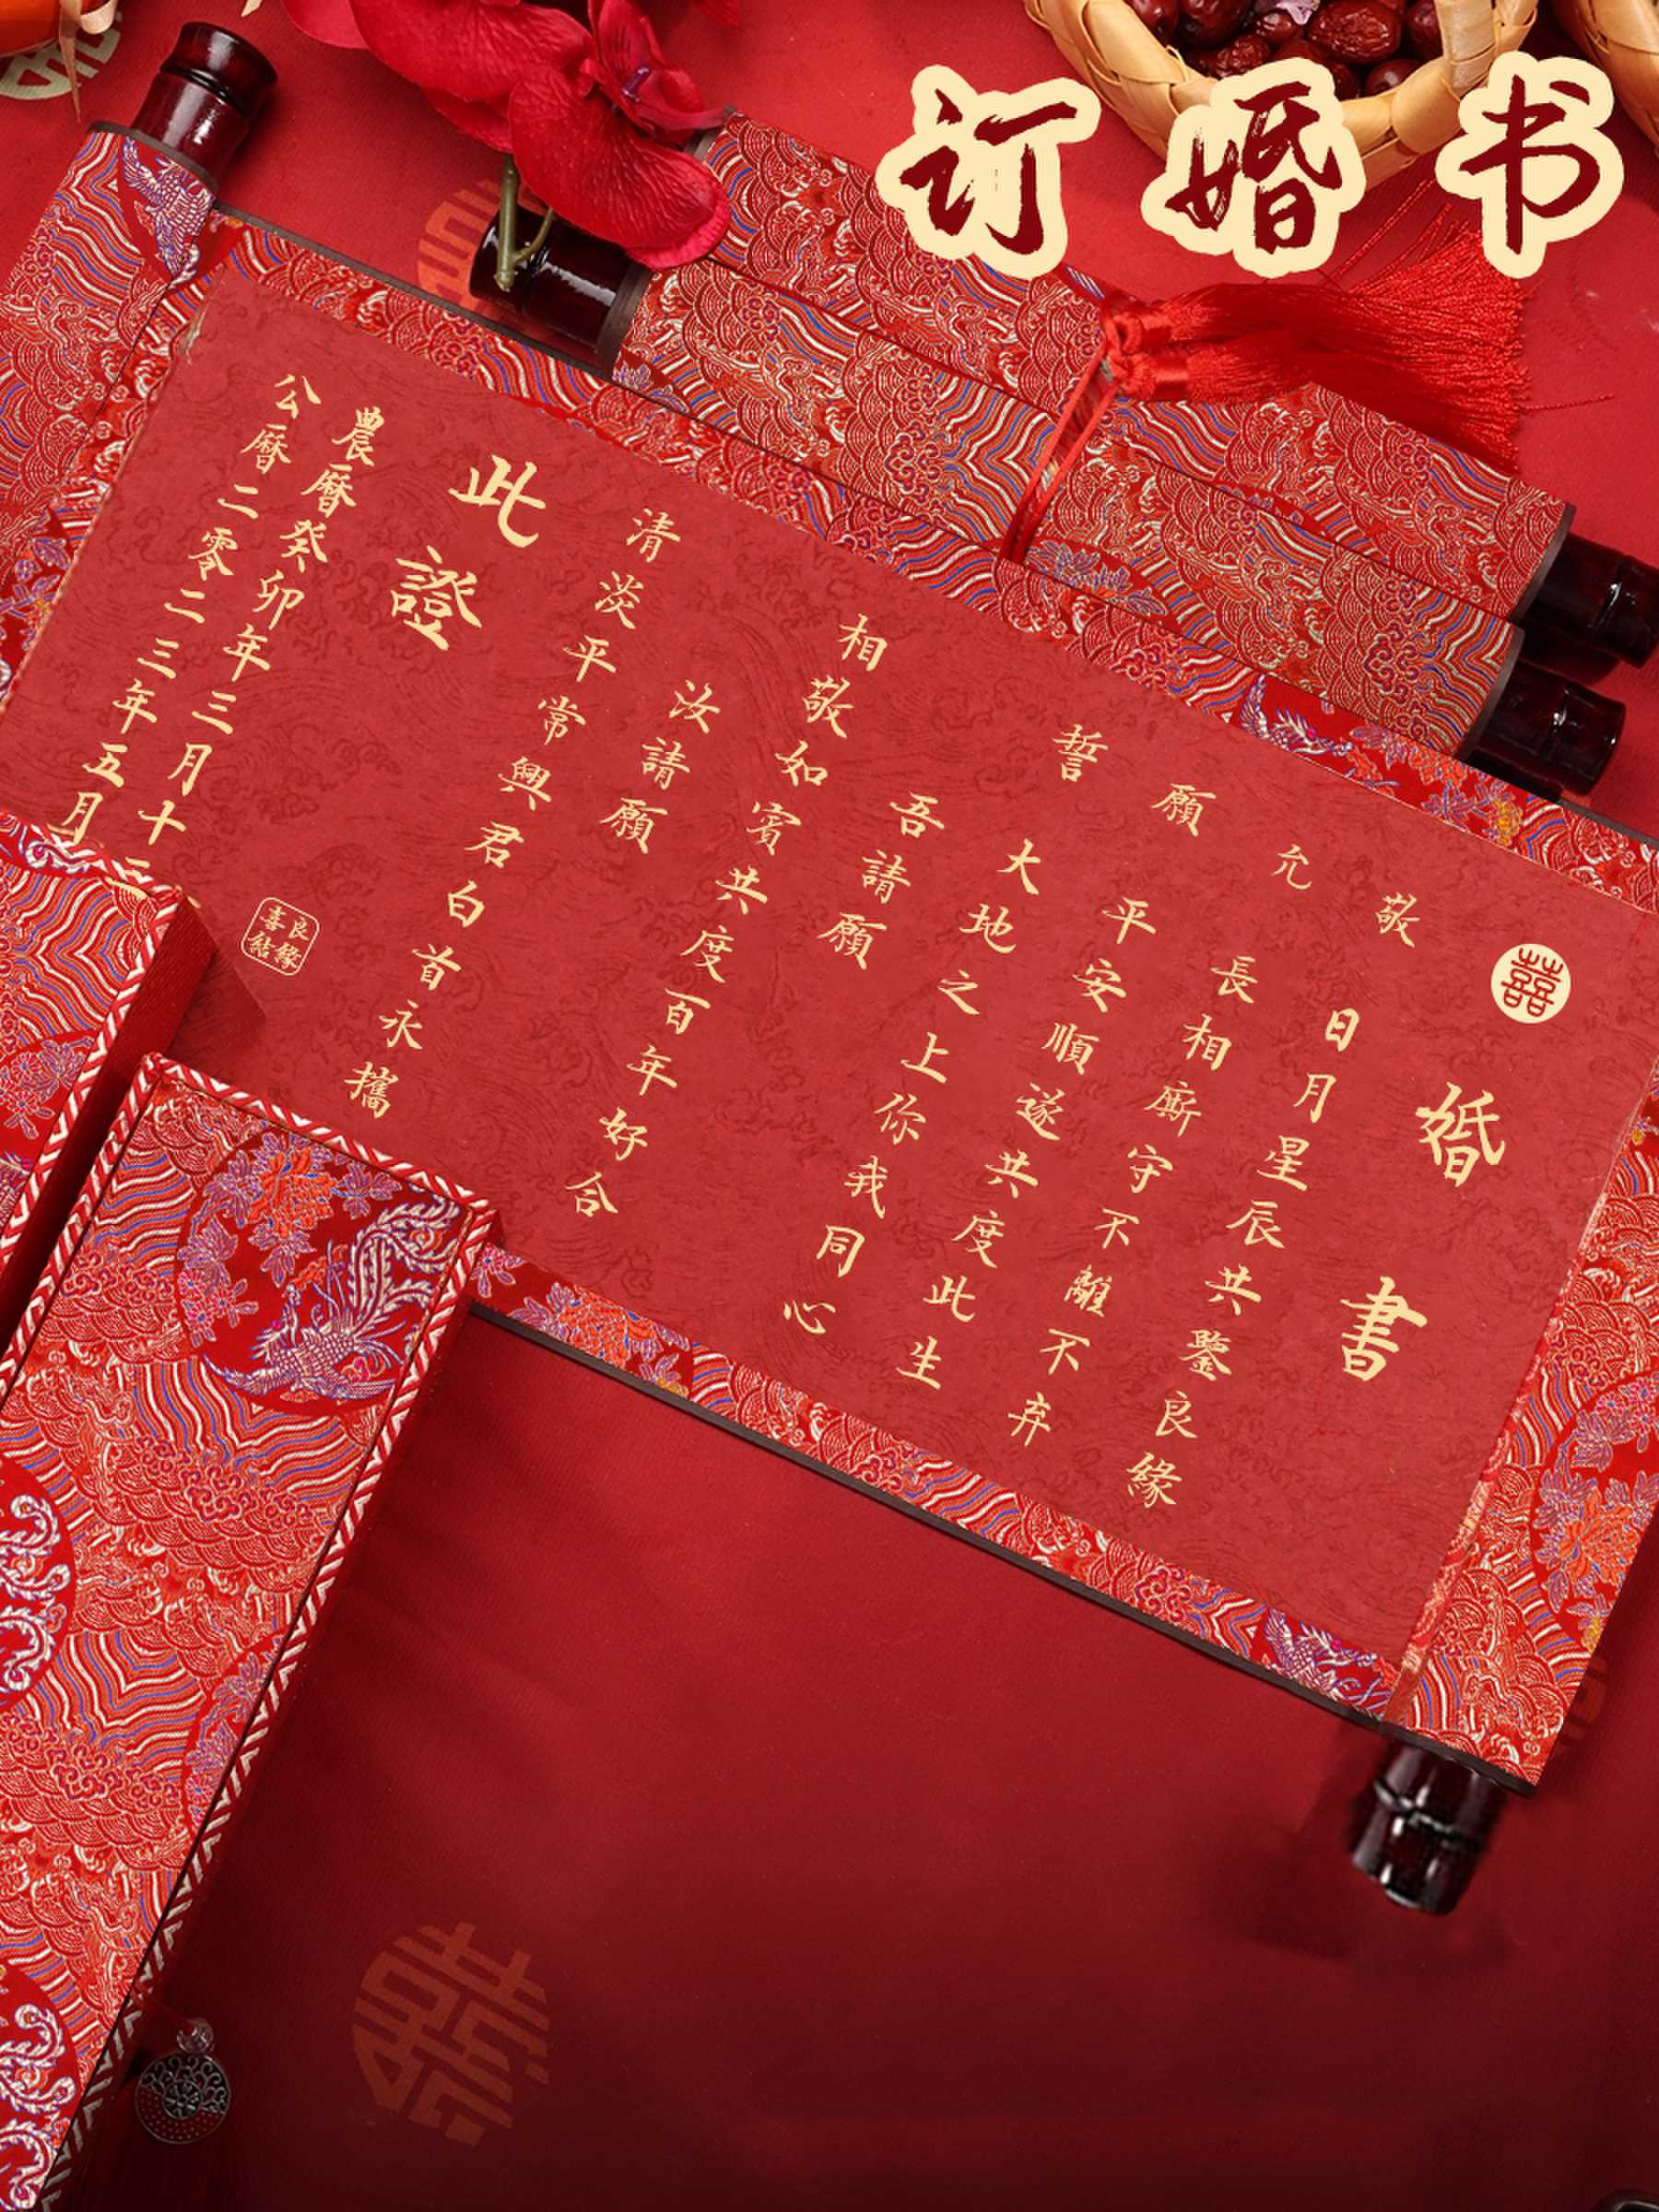 订婚书婚书手卷中国风定制自写空白卷轴结婚高级感传统送日子聘书 - 图1